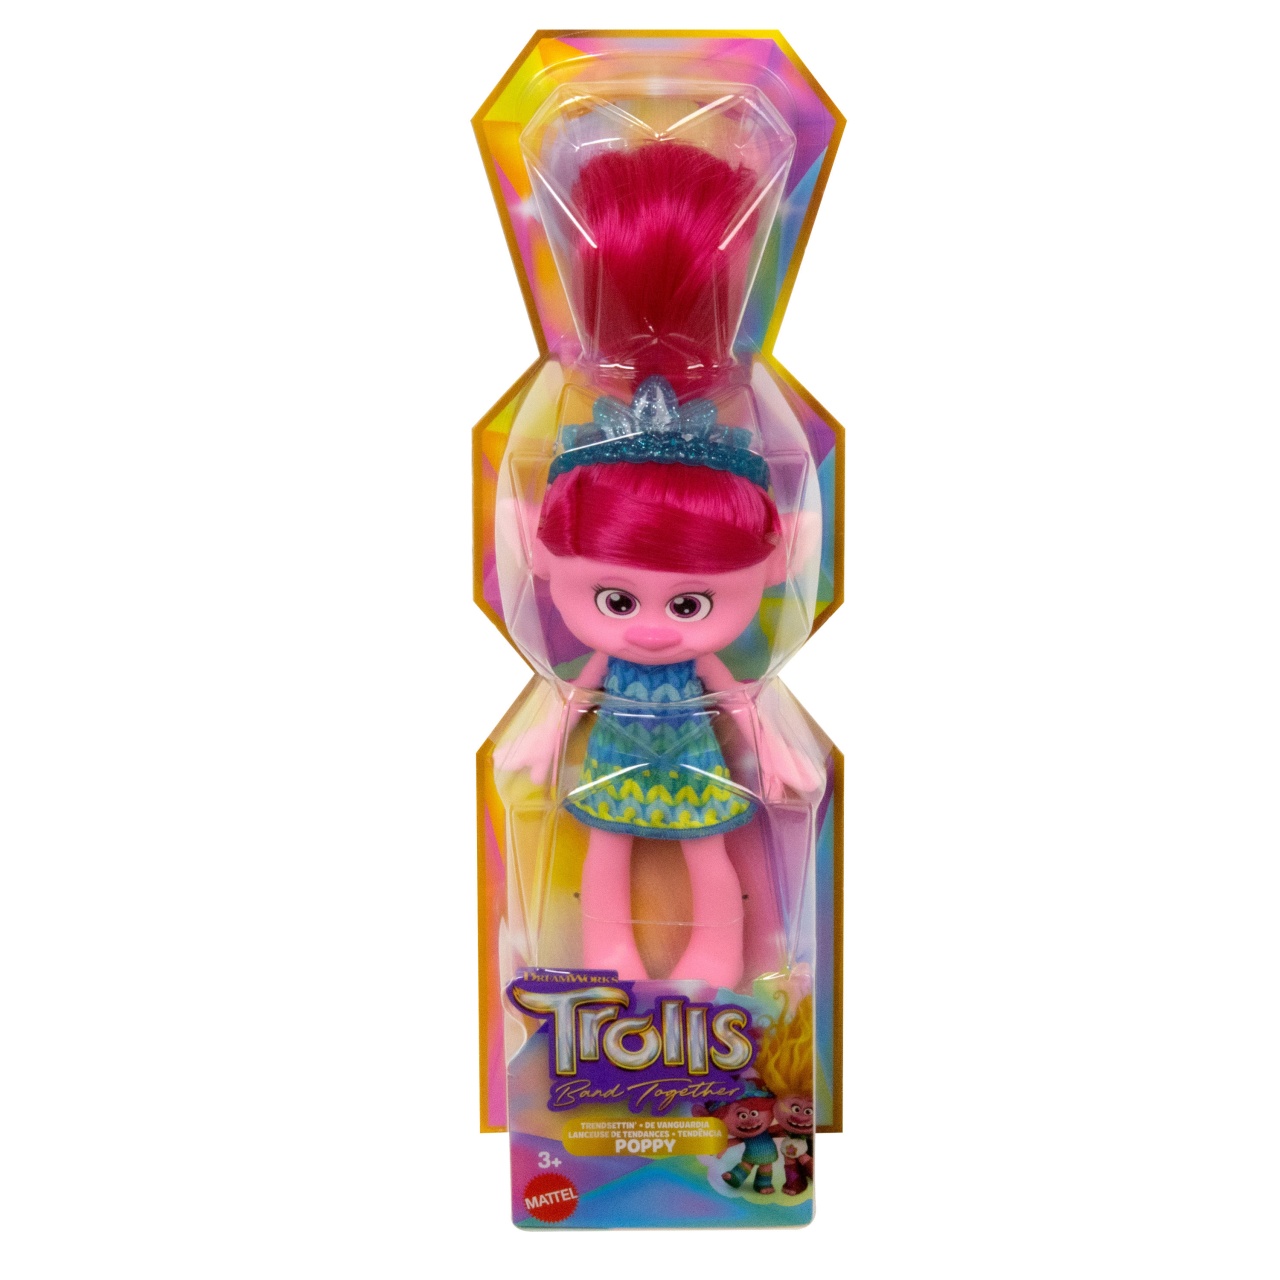 Trolls Poppy 30 cm Puppe von Mattel